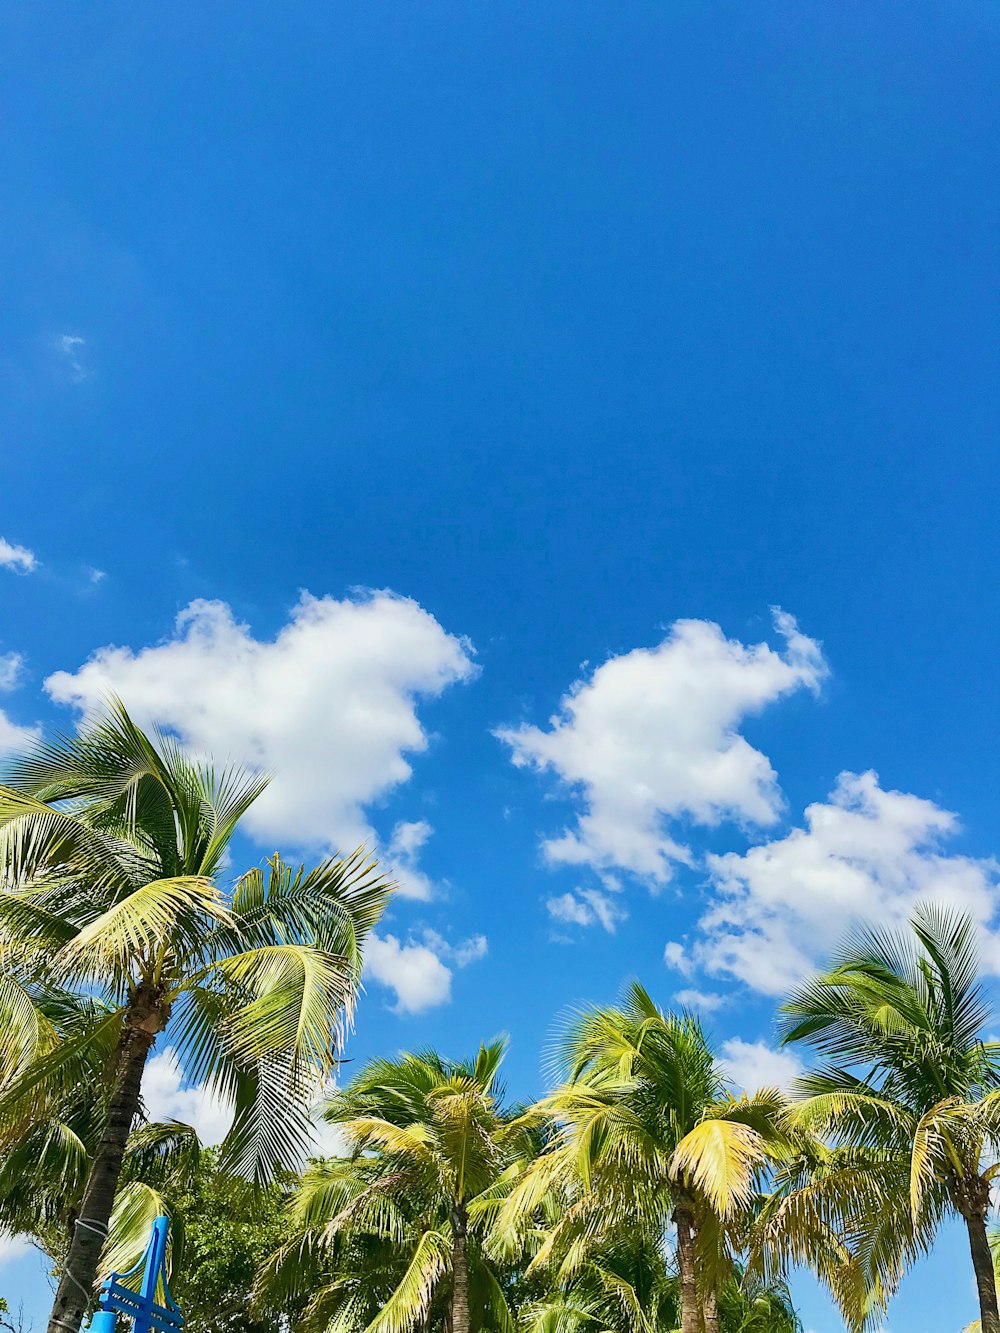 palmeira verde sob o céu azul e nuvens brancas durante o dia